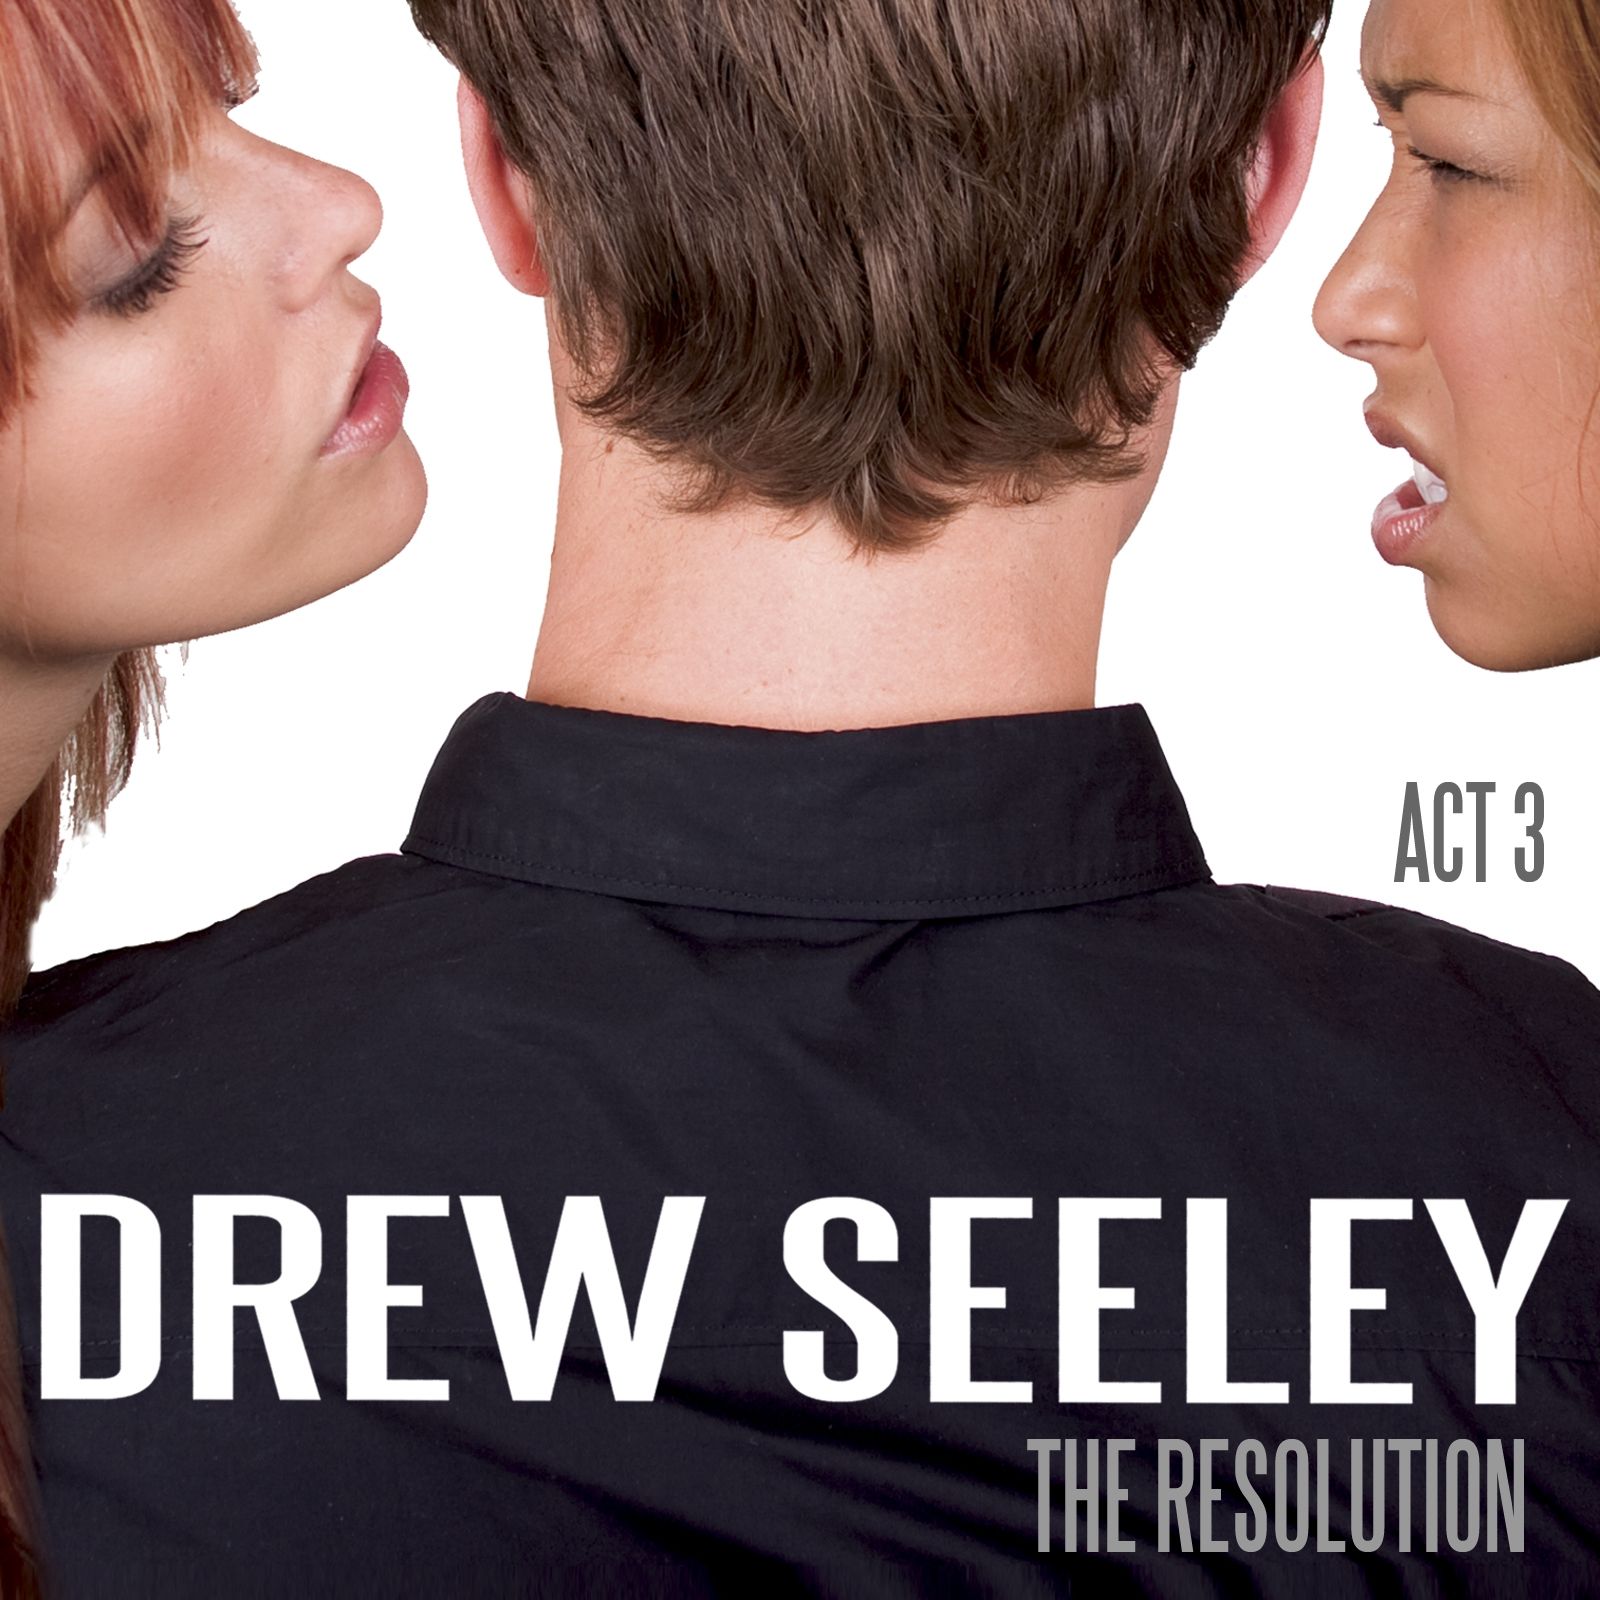 Imagem do álbum The Resolution - Act 3 do(a) artista Drew Seeley